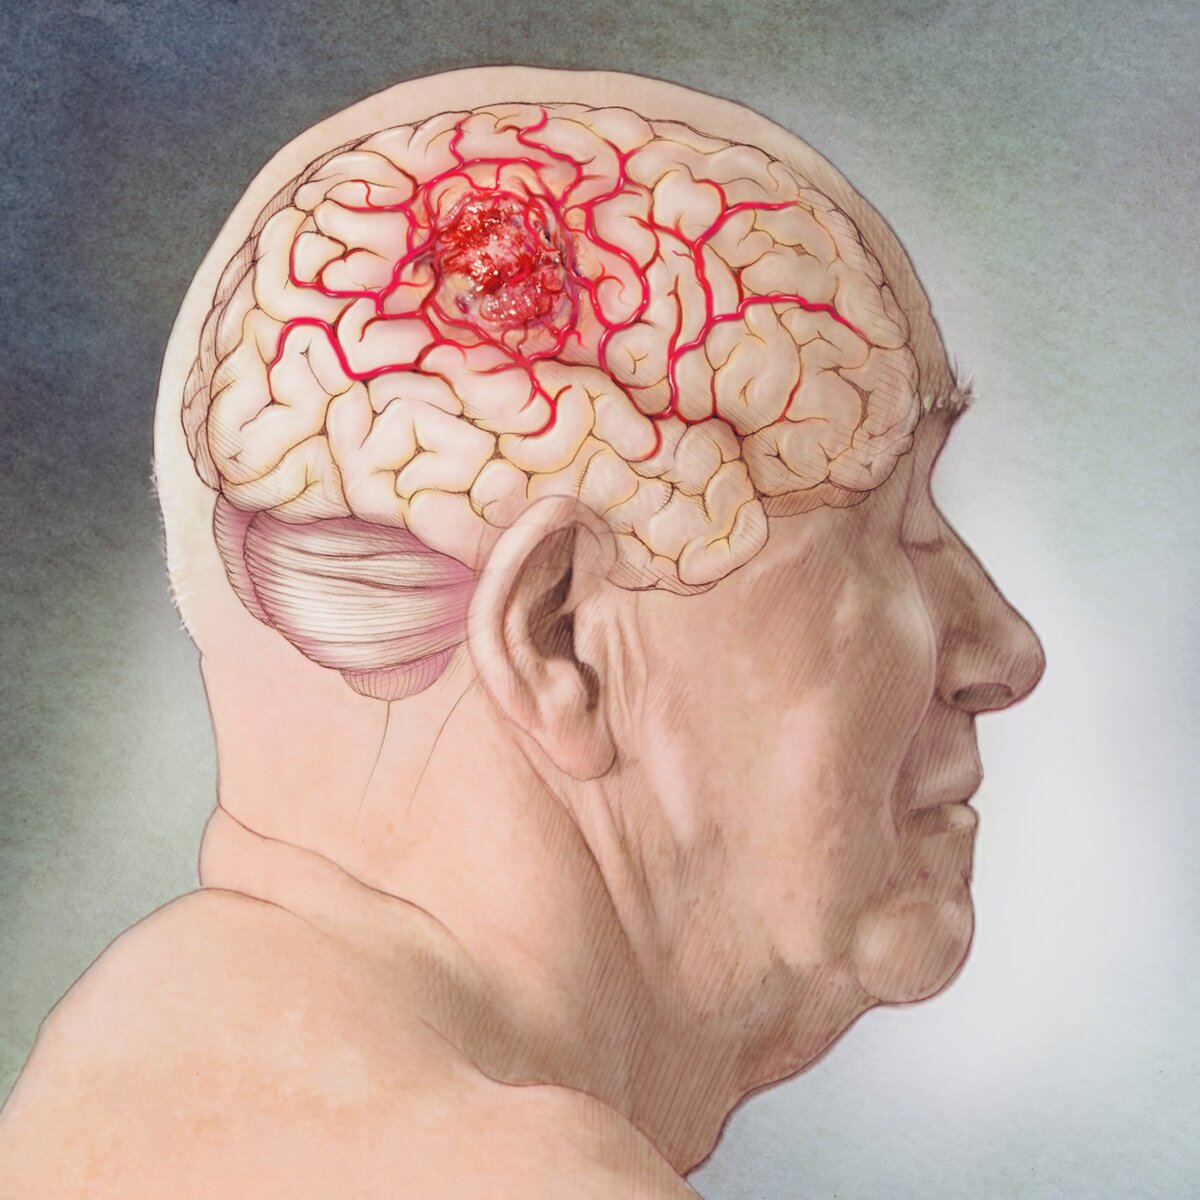 5 основных симптомов рака головного мозга | Эпидемия | Дзен